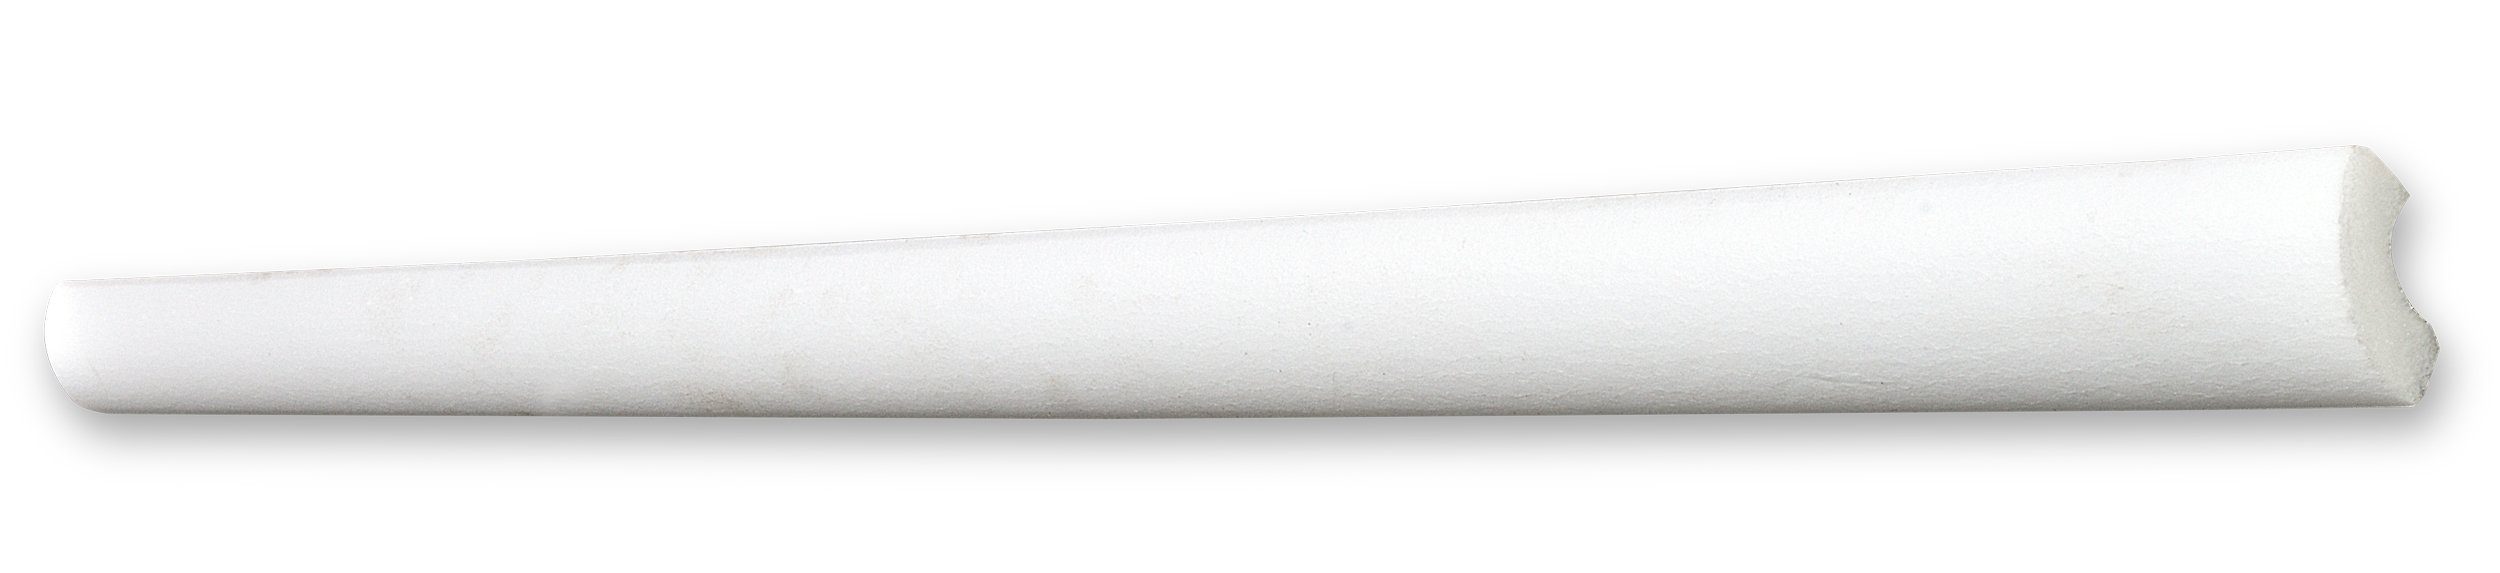 Decosa Zierleiste Decosa Deckenleiste H15 (Susanna), 20 x 20 mm, Länge: 2 m, Kleben, Polystyrol (Styropor), 180-St.